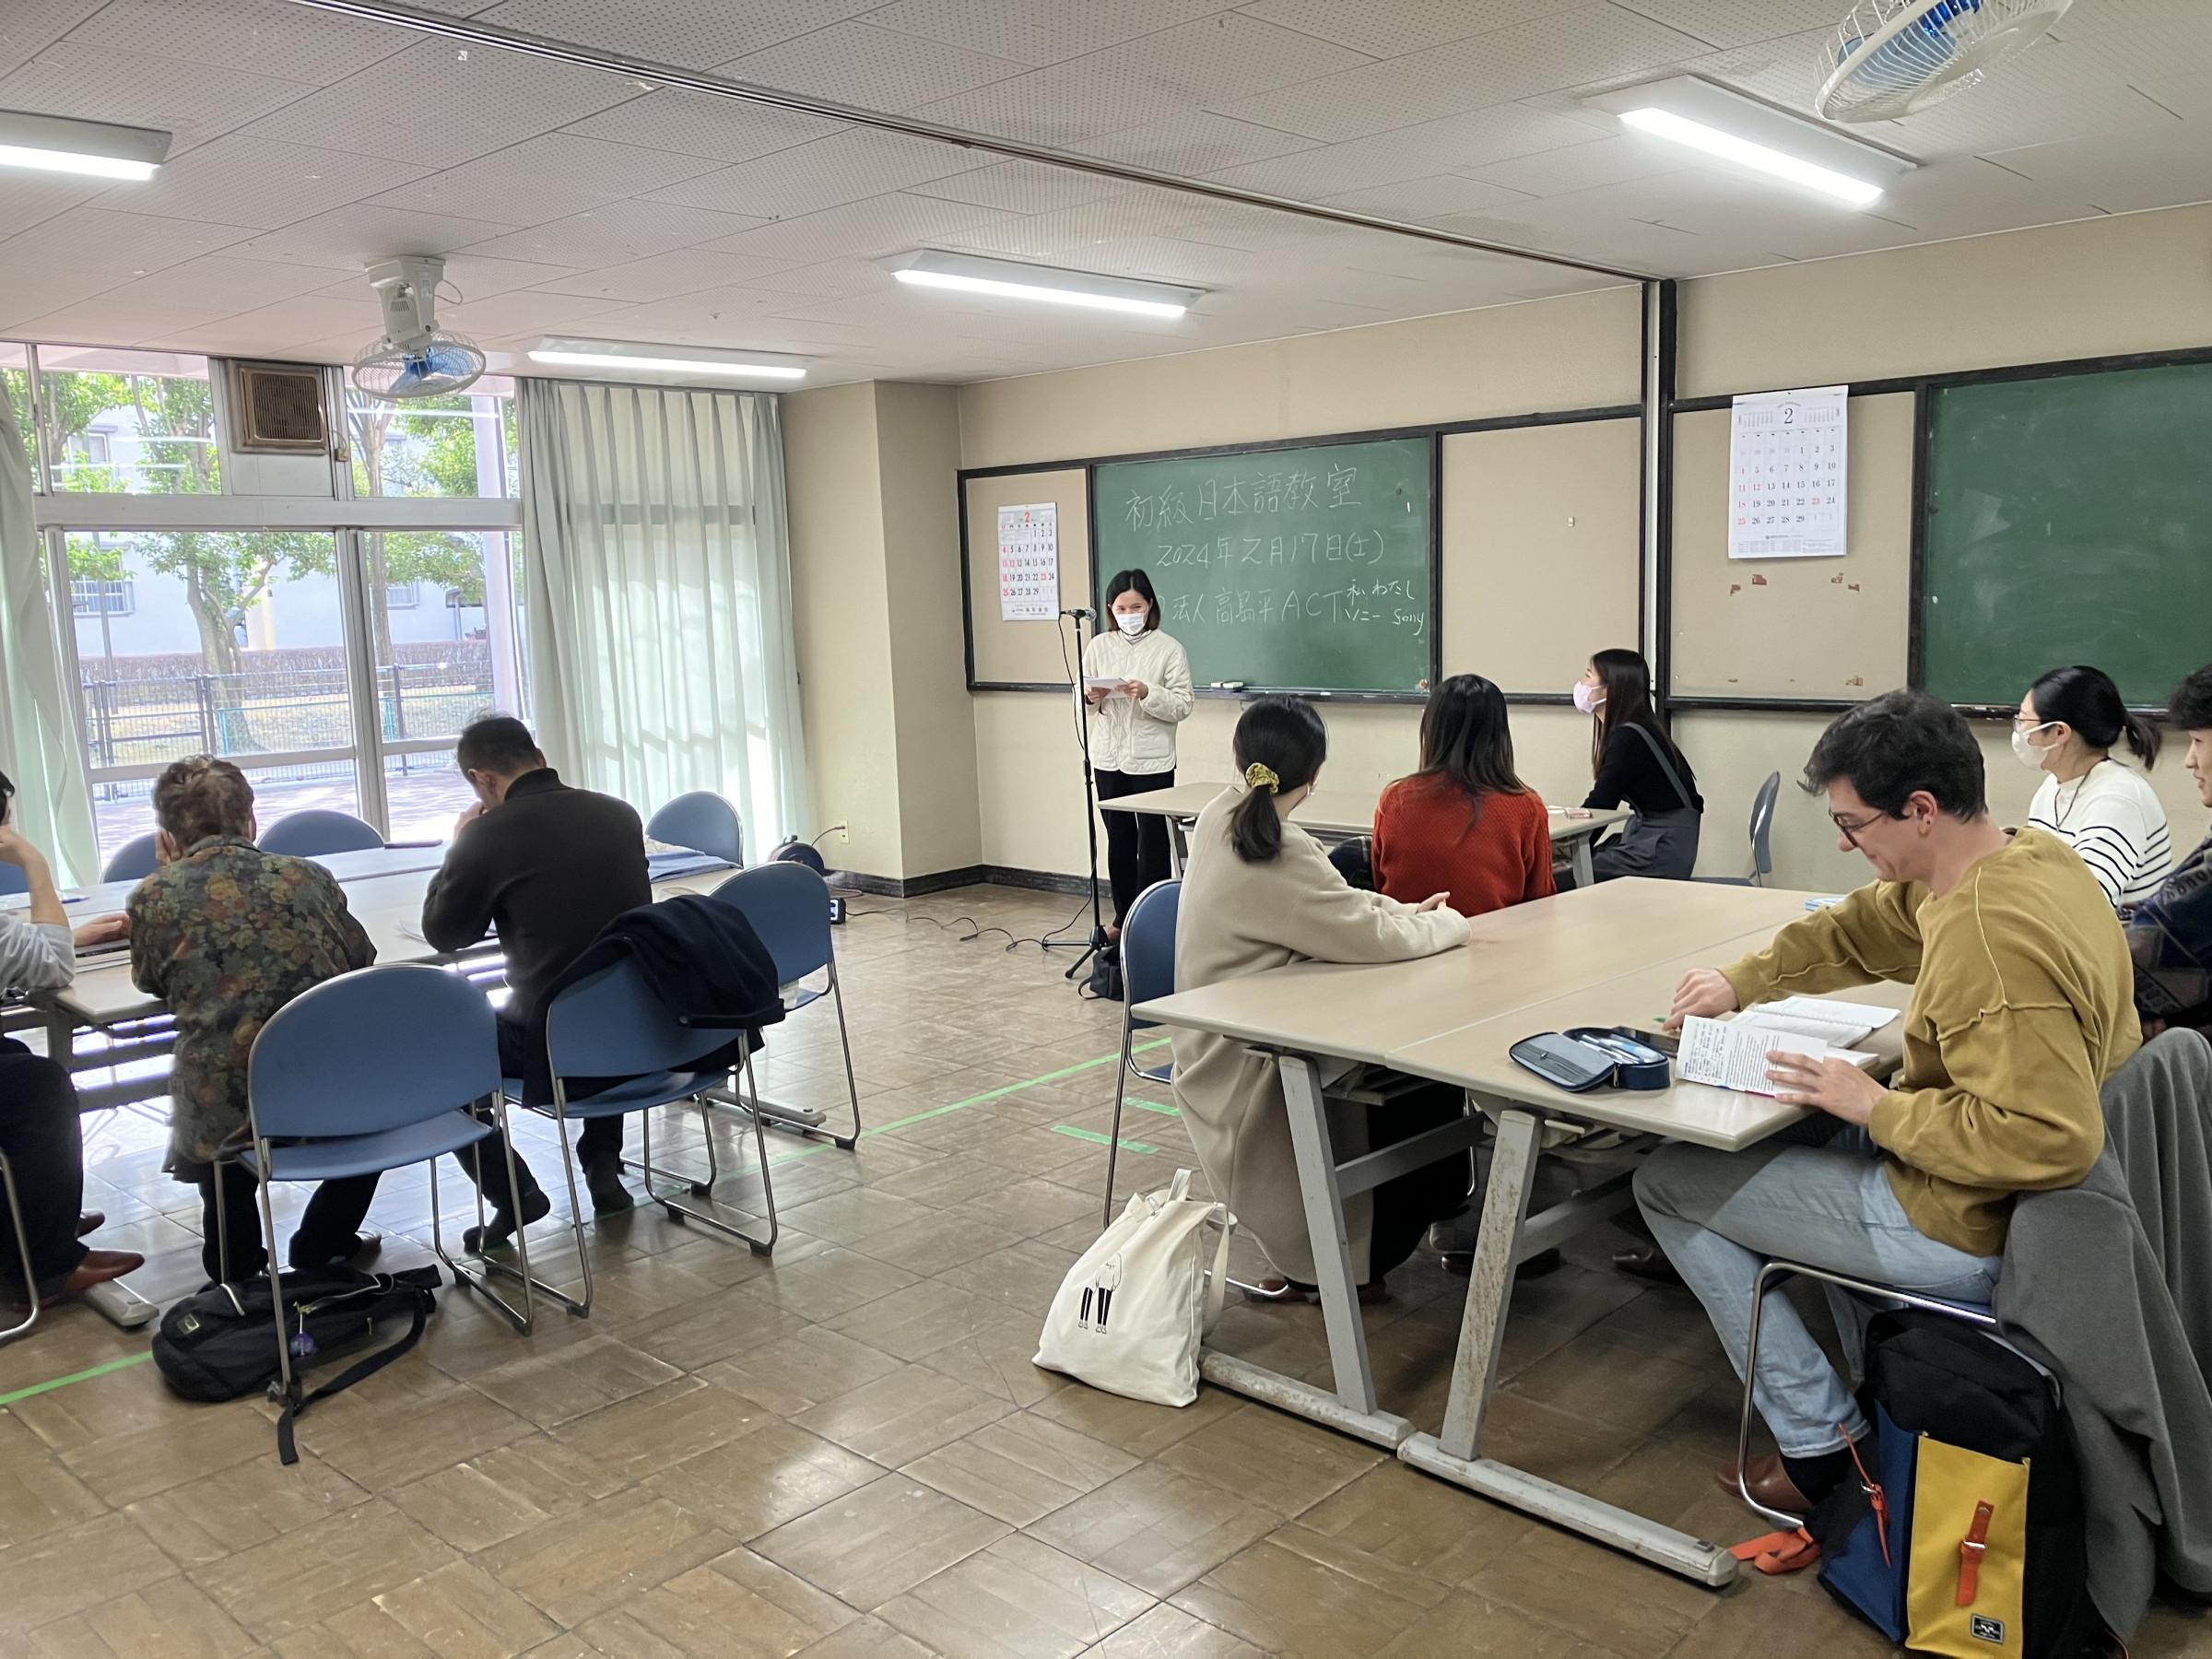 2月17日の日本語教室初級の初級クラスでスピーチ会が開催されました。当日は4人の受講生が日本での暮らしの話や歌を披露しました。小田先生、お疲れさま。